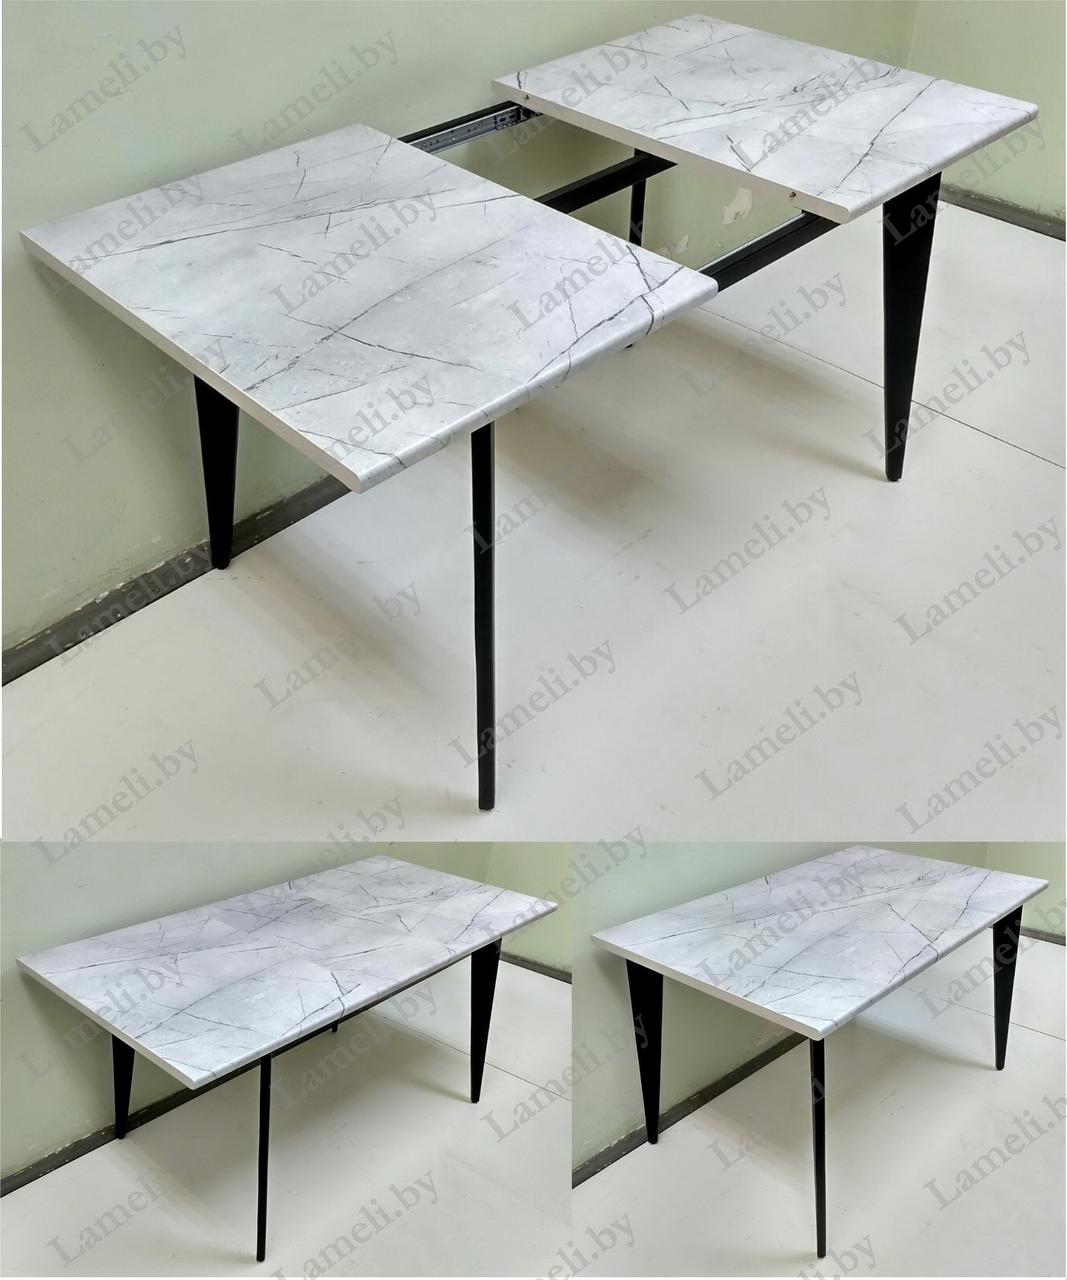 РАЗДВИЖНОЙ стол из массива дуба, ЛДСП или постформинга на  удобном подстолье серии К-5. Выбор цвета и размера., фото 1